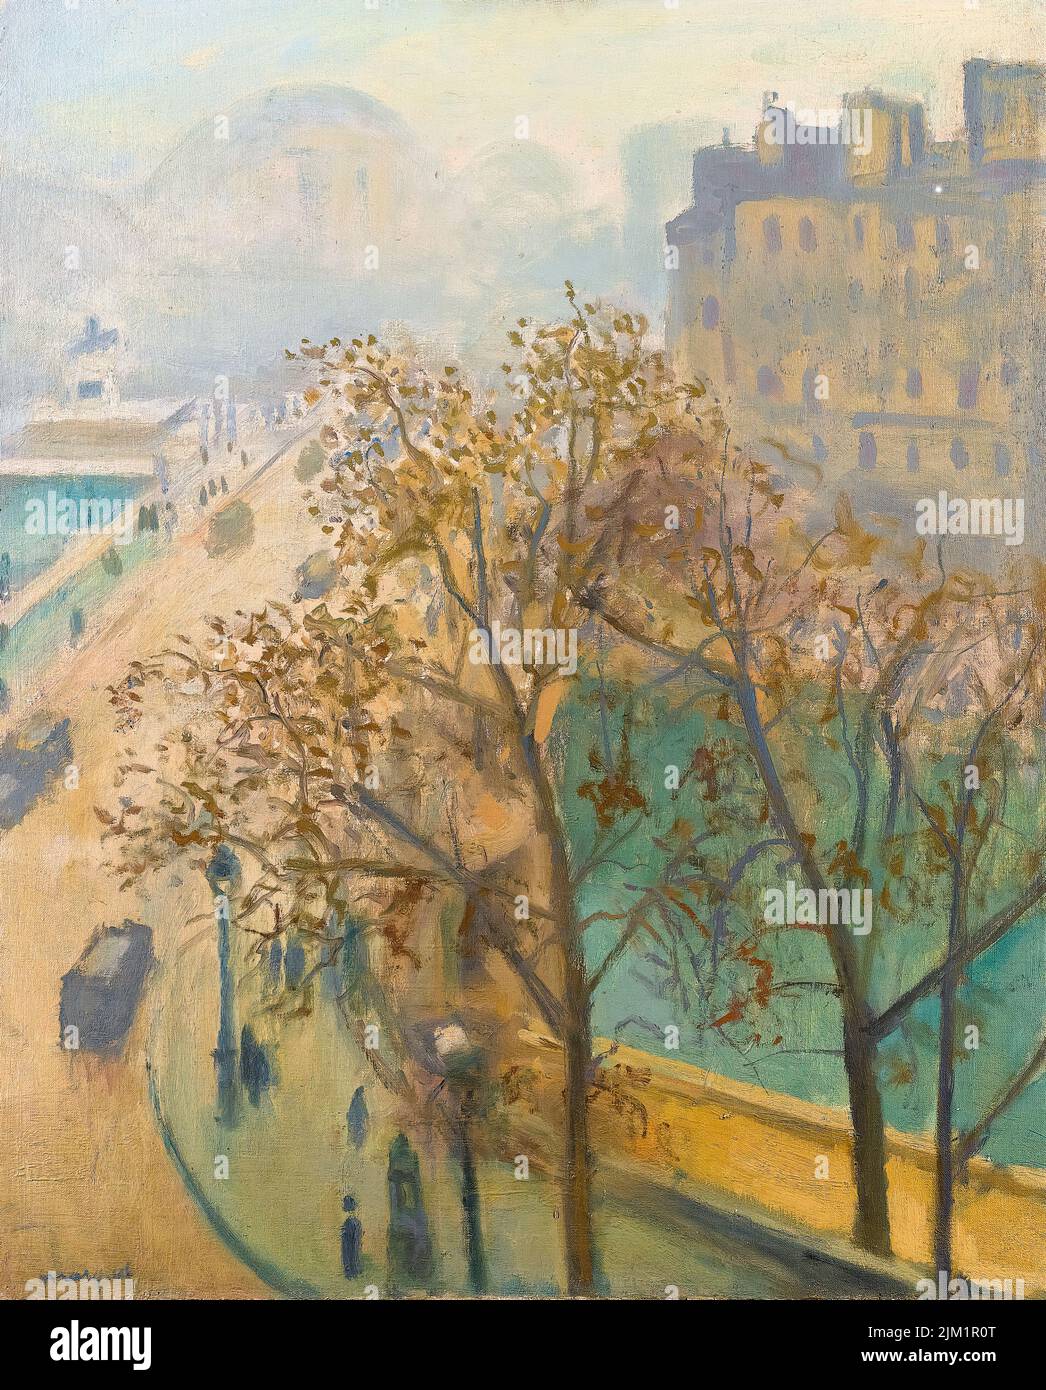 Peinture Albert Marquet, le Pont-neuf, Brume d’automne, huile sur toile, 1938 Banque D'Images